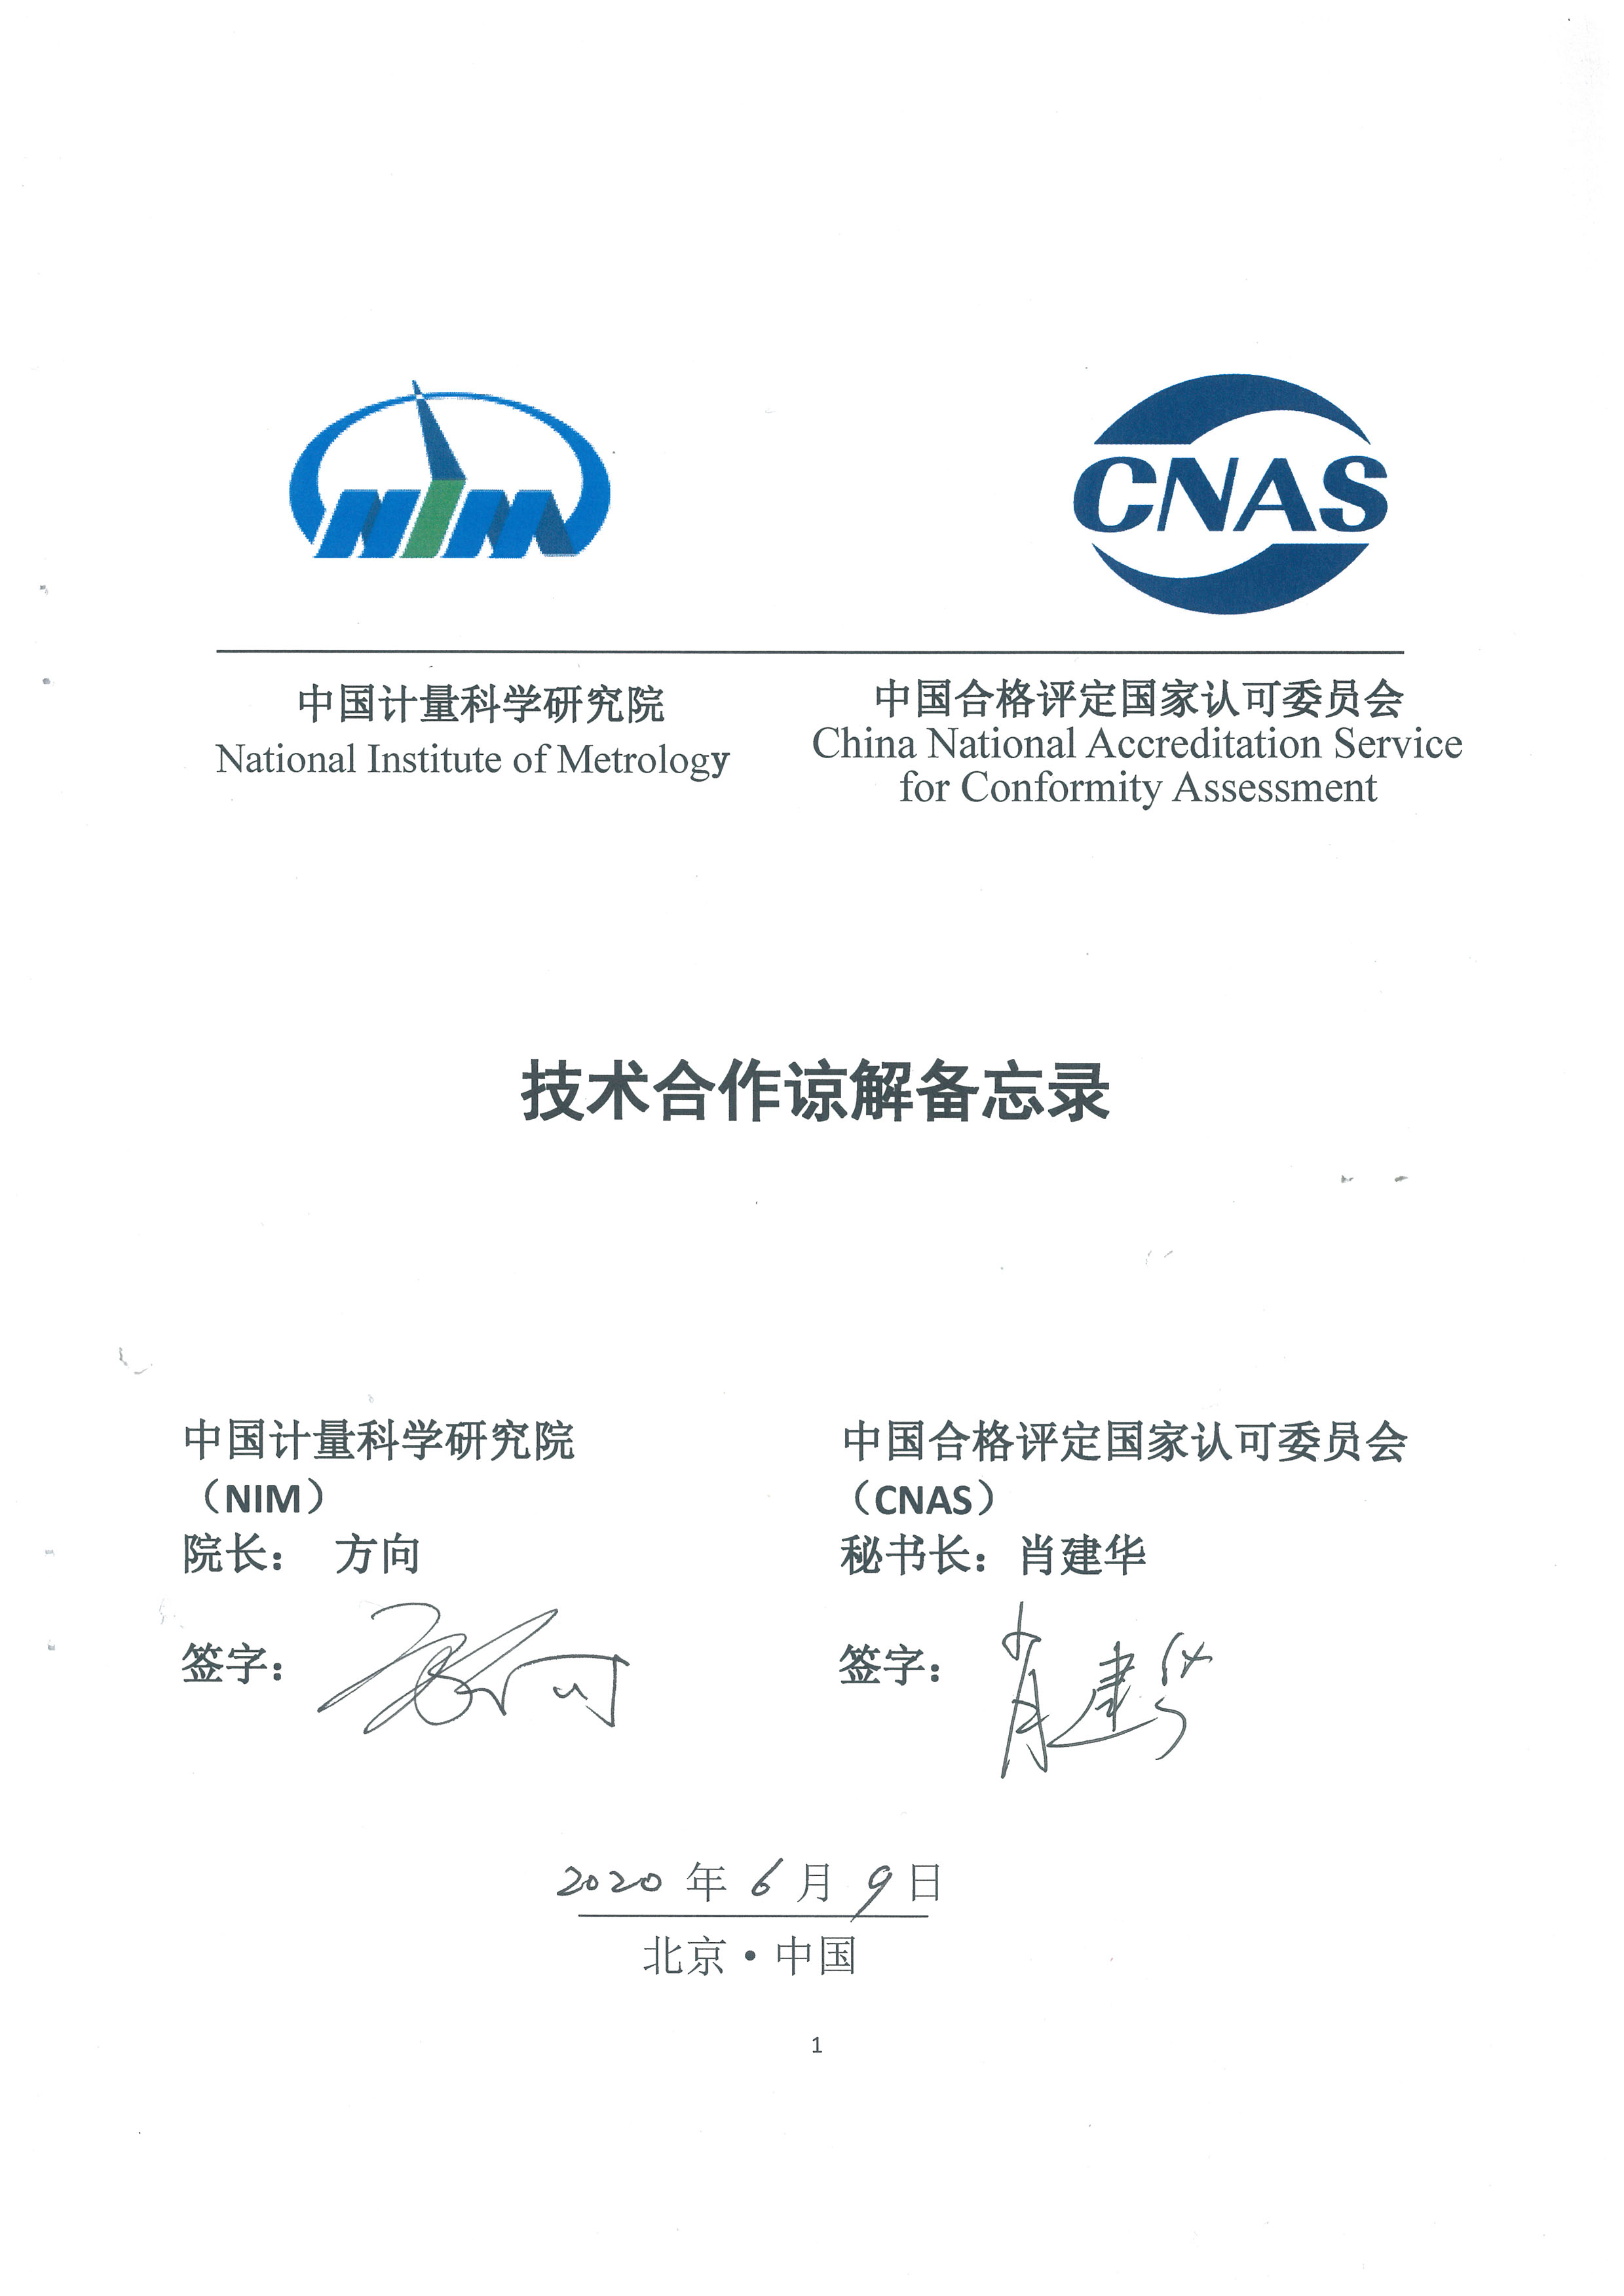 大阳城集团娱乐平台与中国合格评定国家认可委员会技术合作谅解备忘录